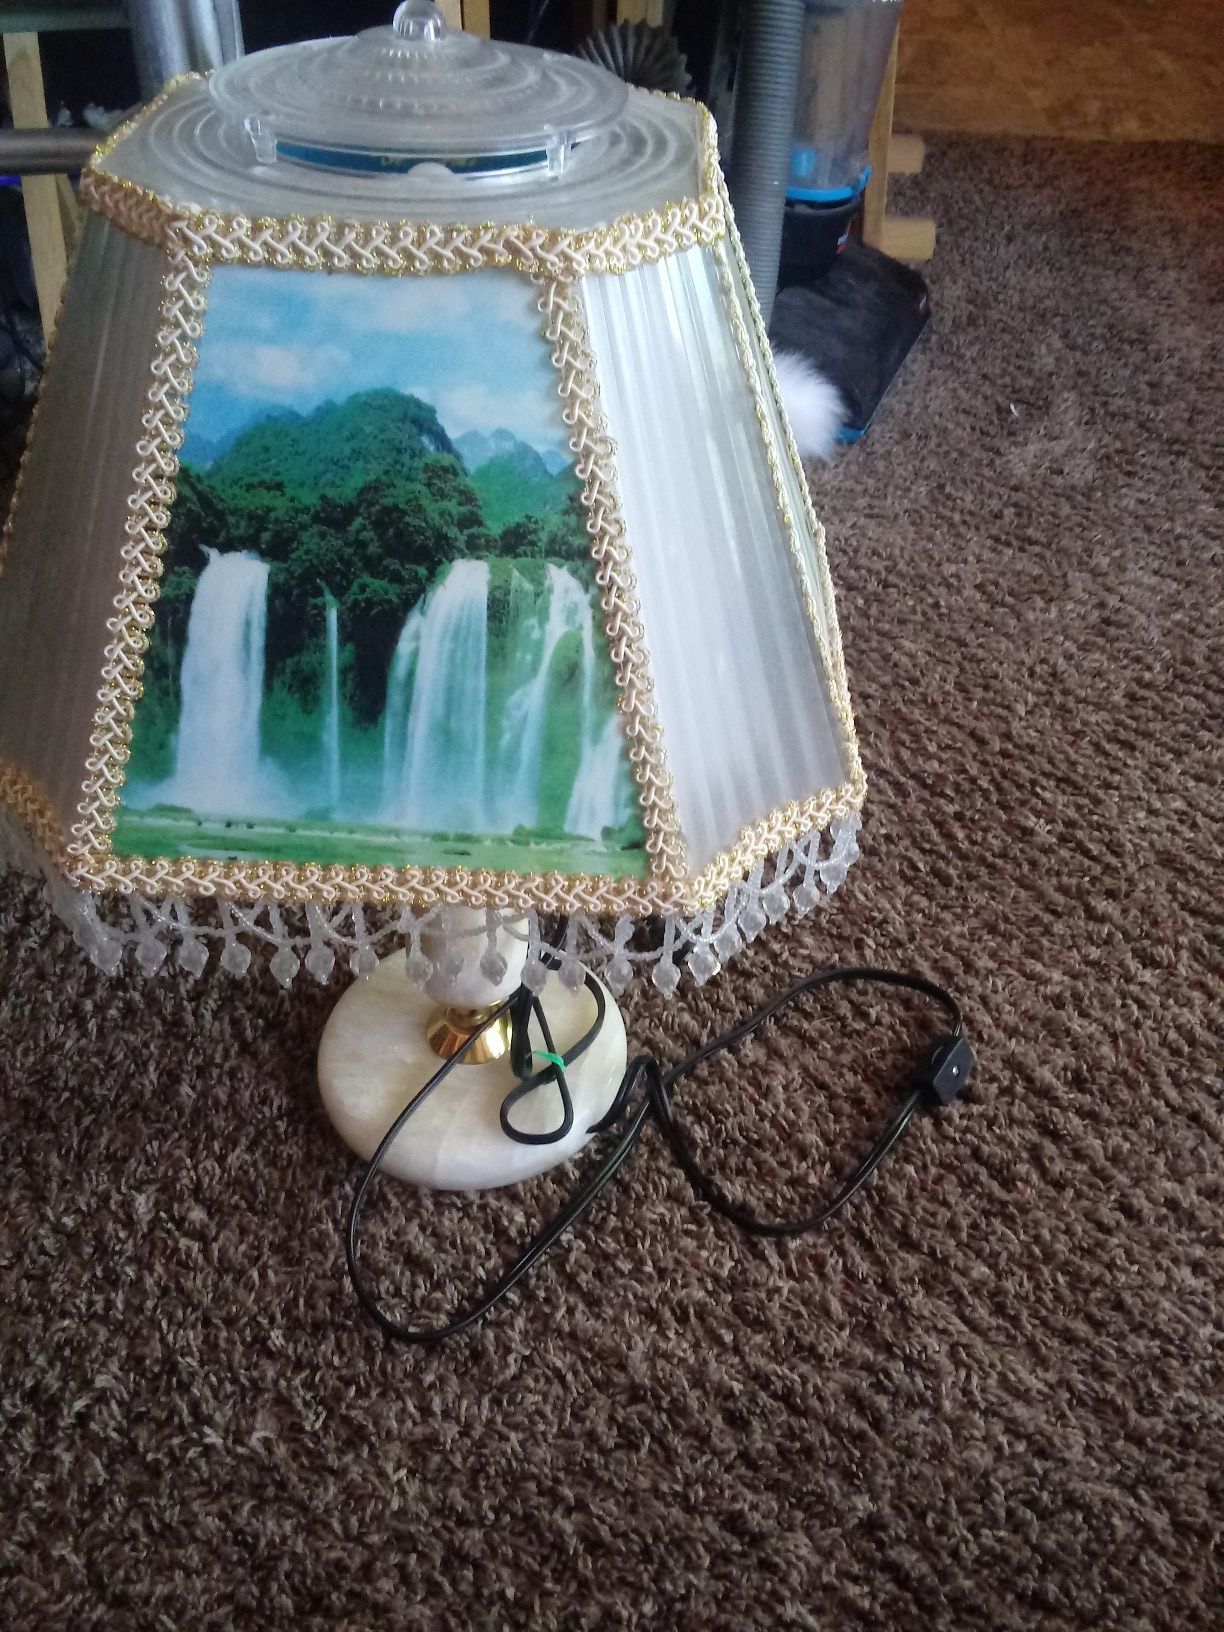 Selling a beautiful waterfall lamp